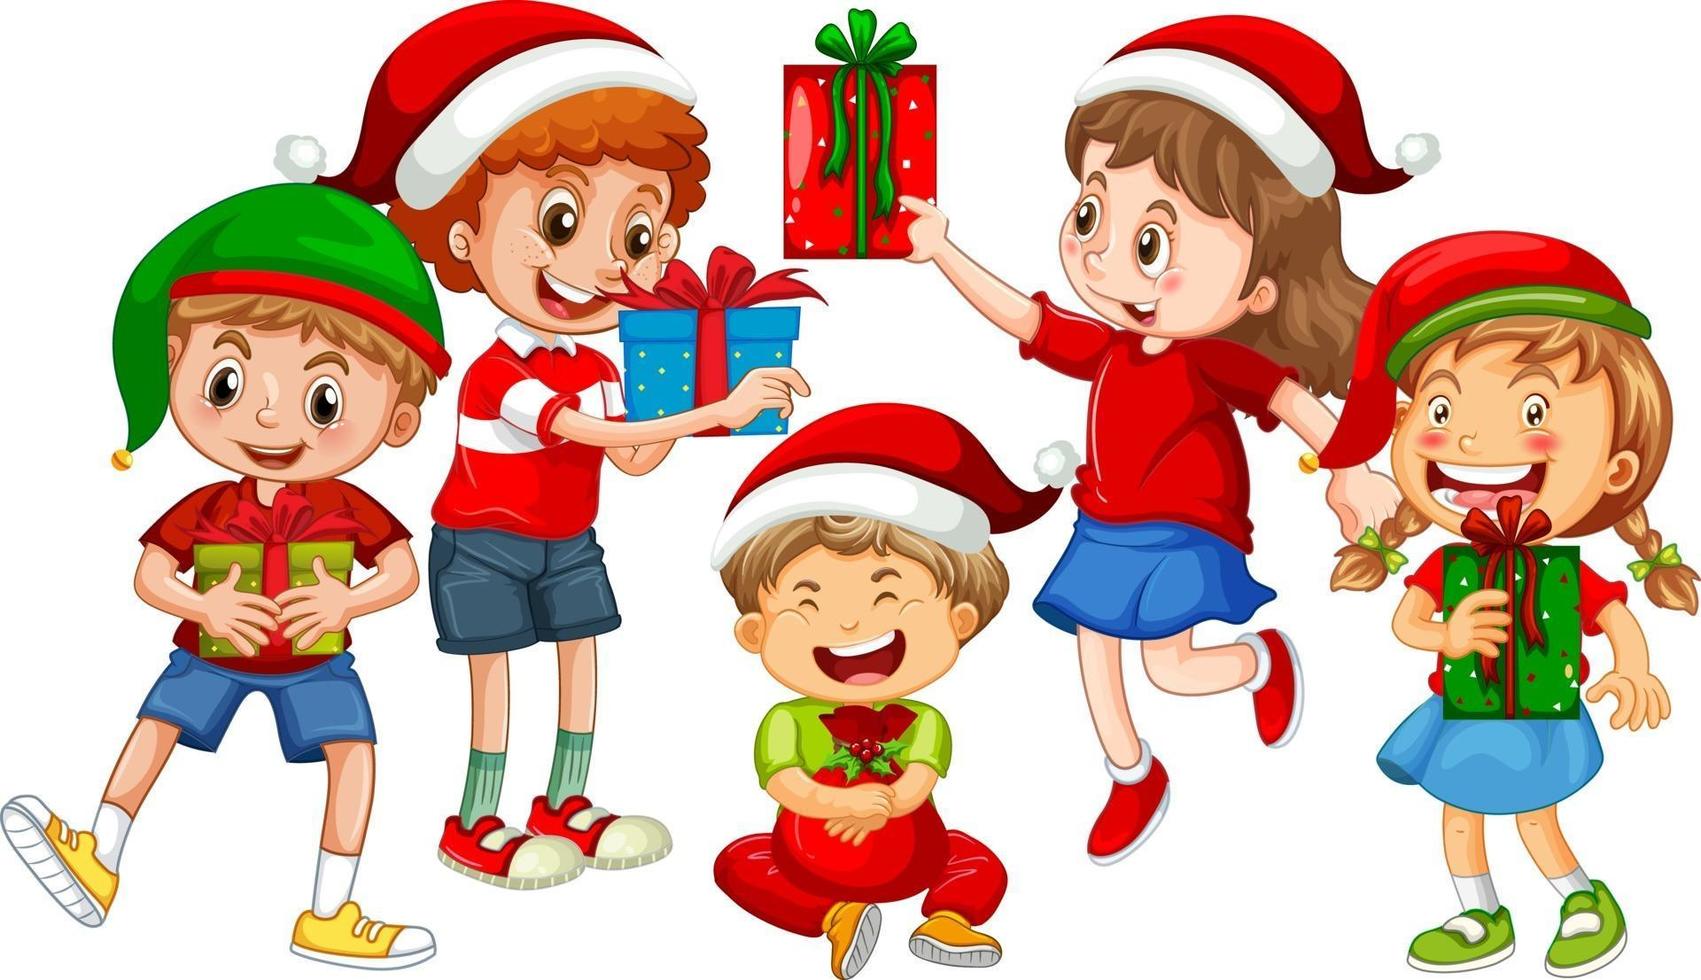 crianças diferentes vestindo fantasias com o tema natal e segurando com sua caixa de presente isolada no fundo branco vetor